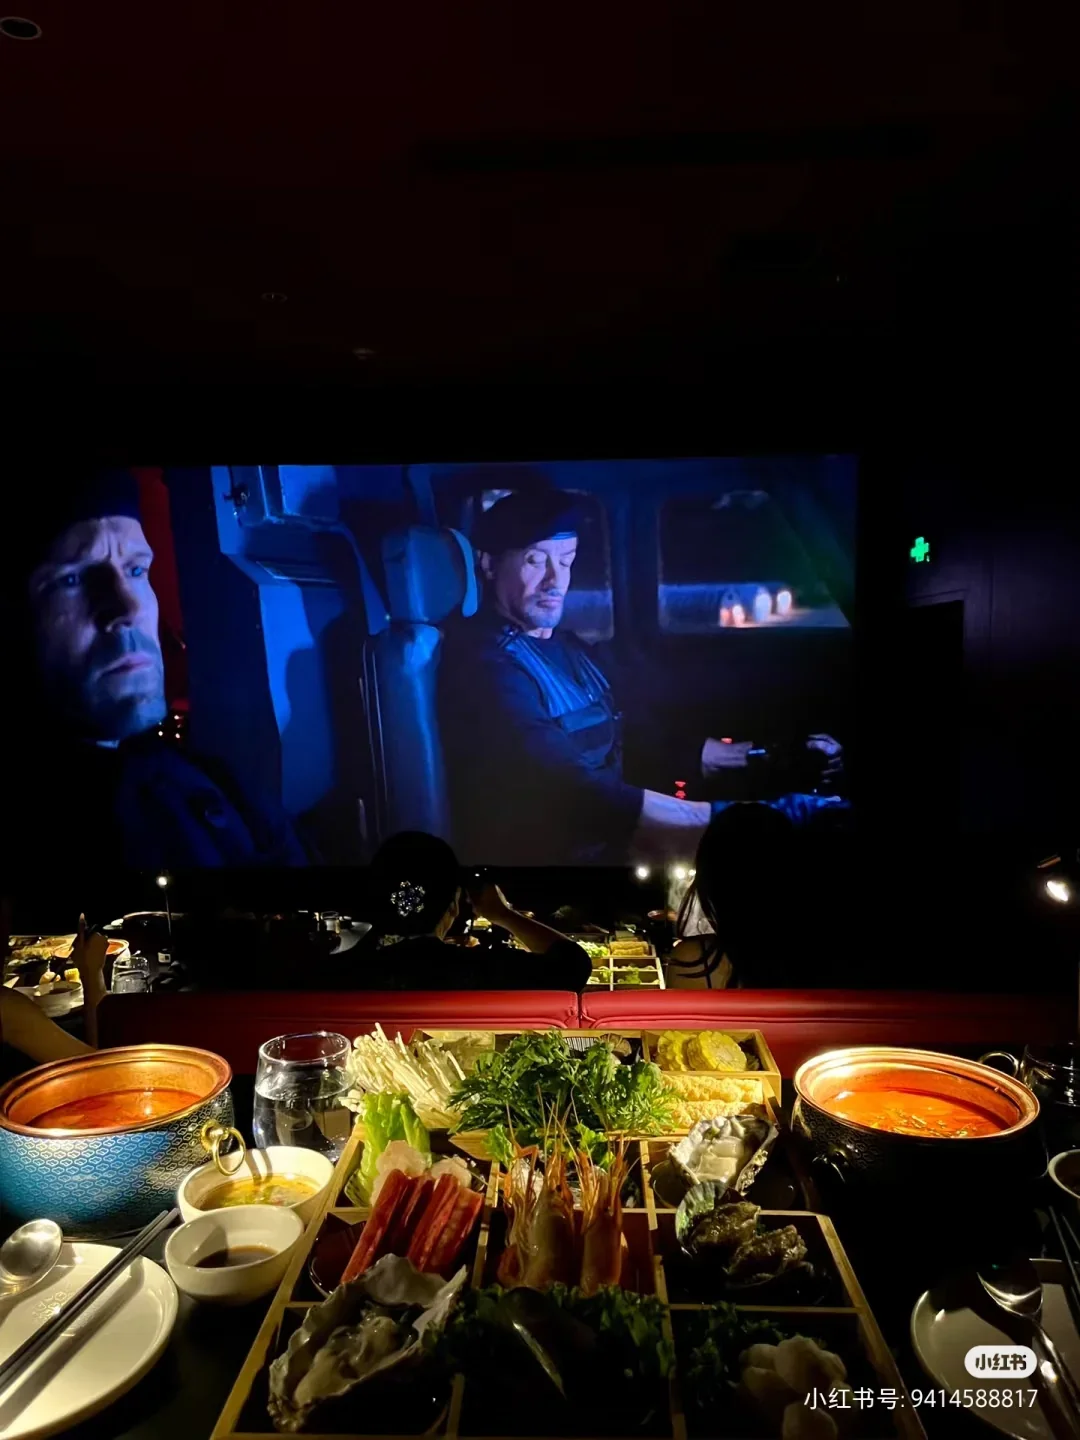 โรงภาพยนตร์ในจีน กินชาบูในโรงหนังได้